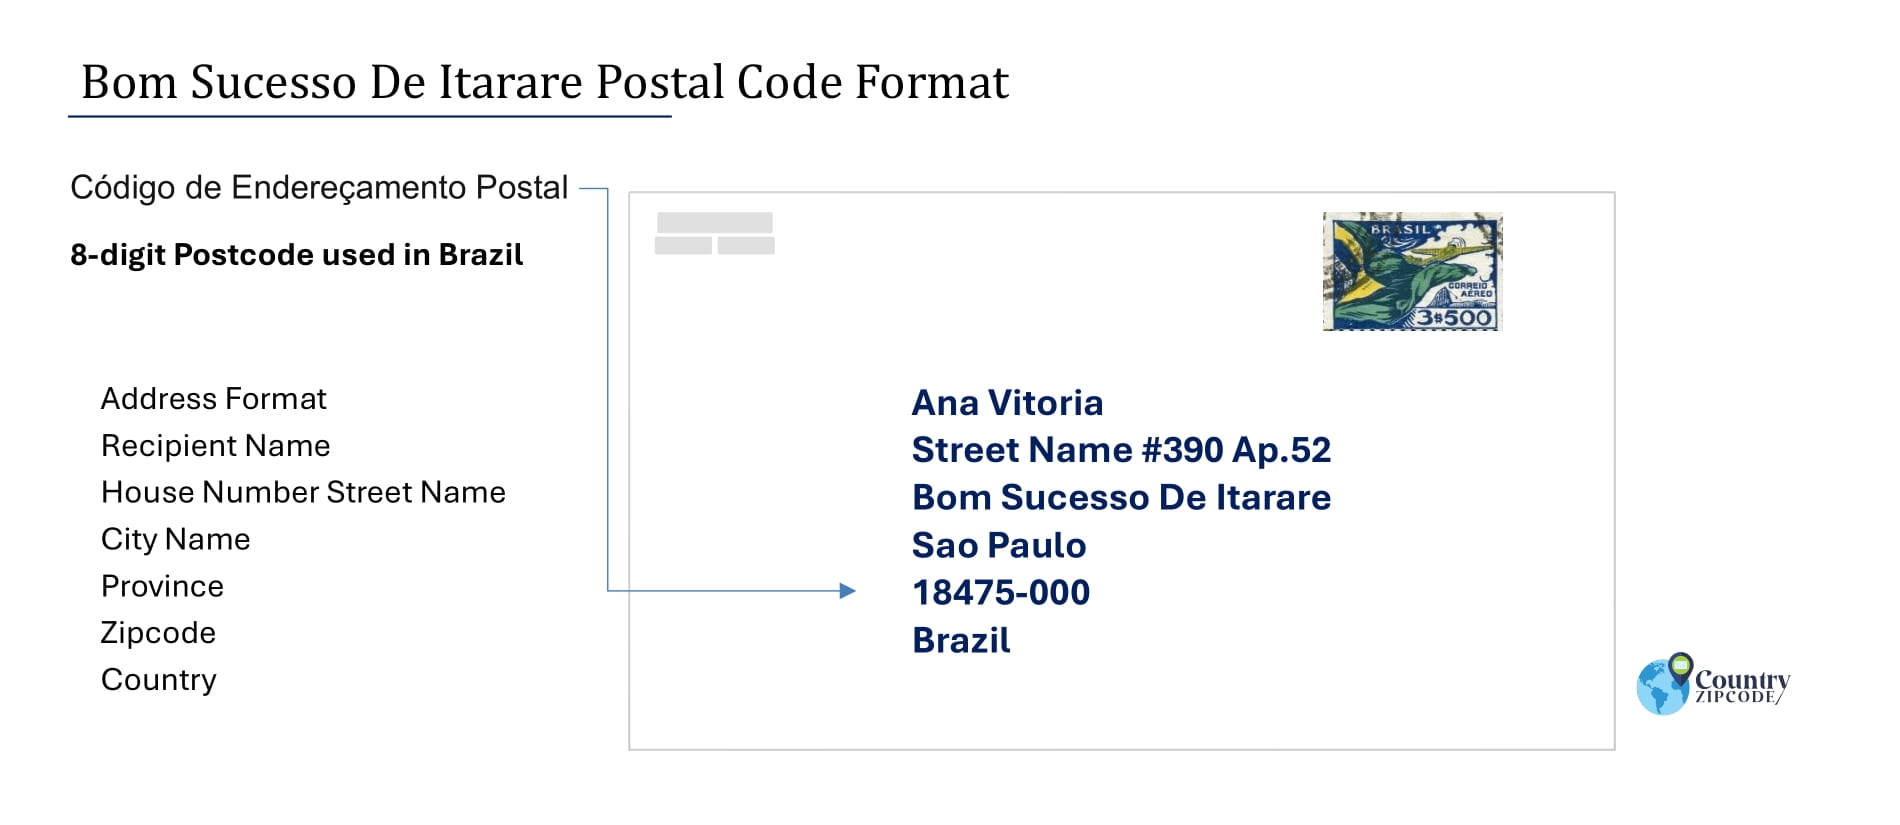 Example of Codigo de Enderecamento Postal and Address format of Bom Sucesso De Itarare Brazil